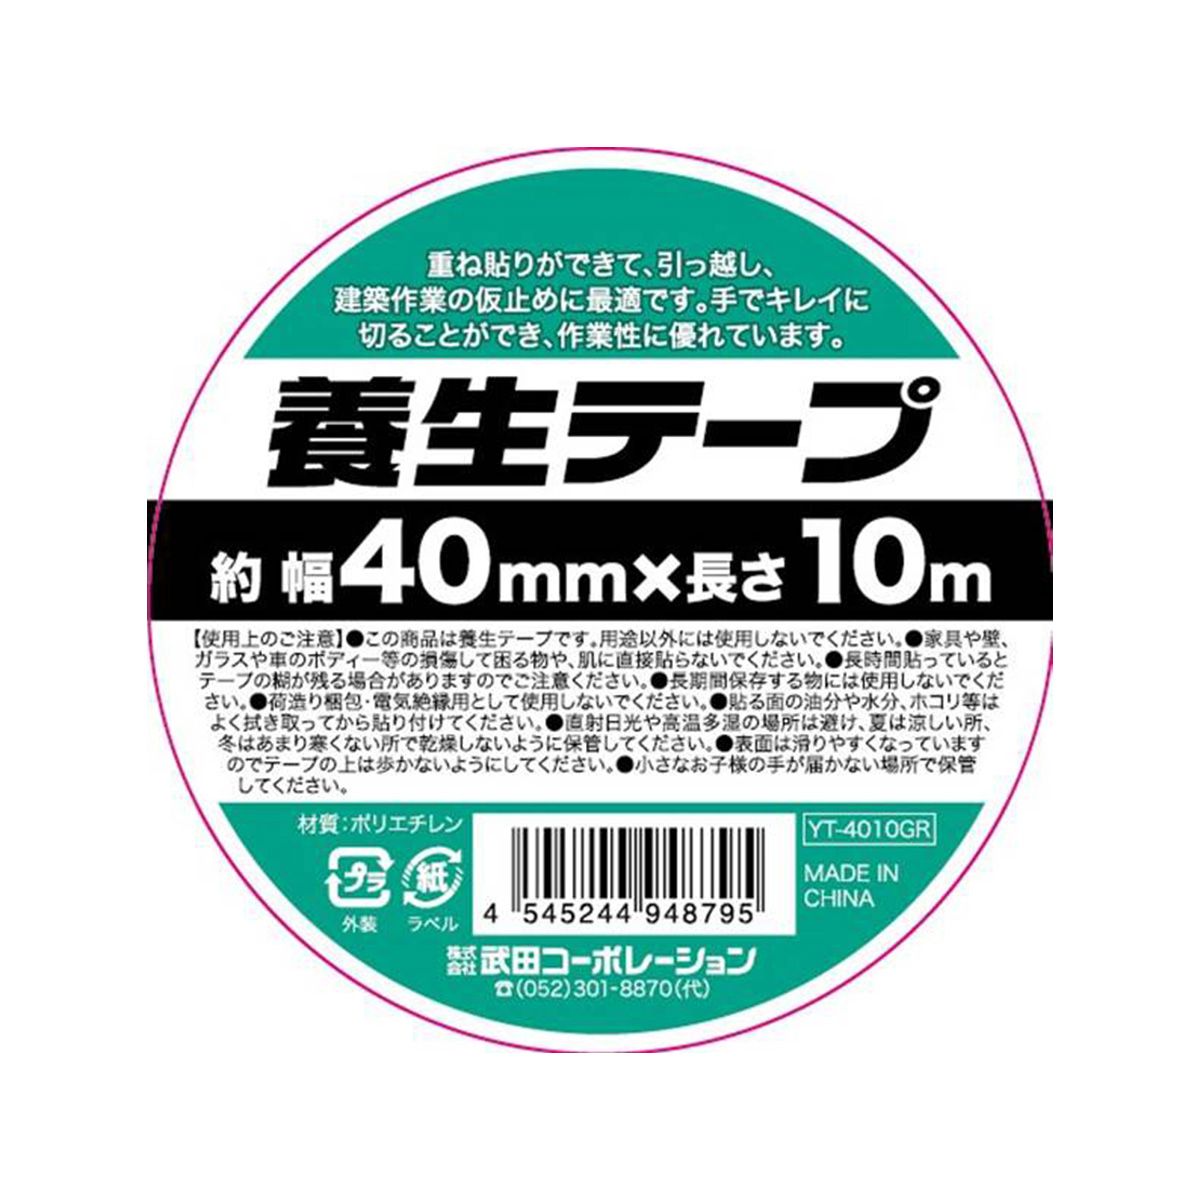 養生テープ40mm×10mGR 456321